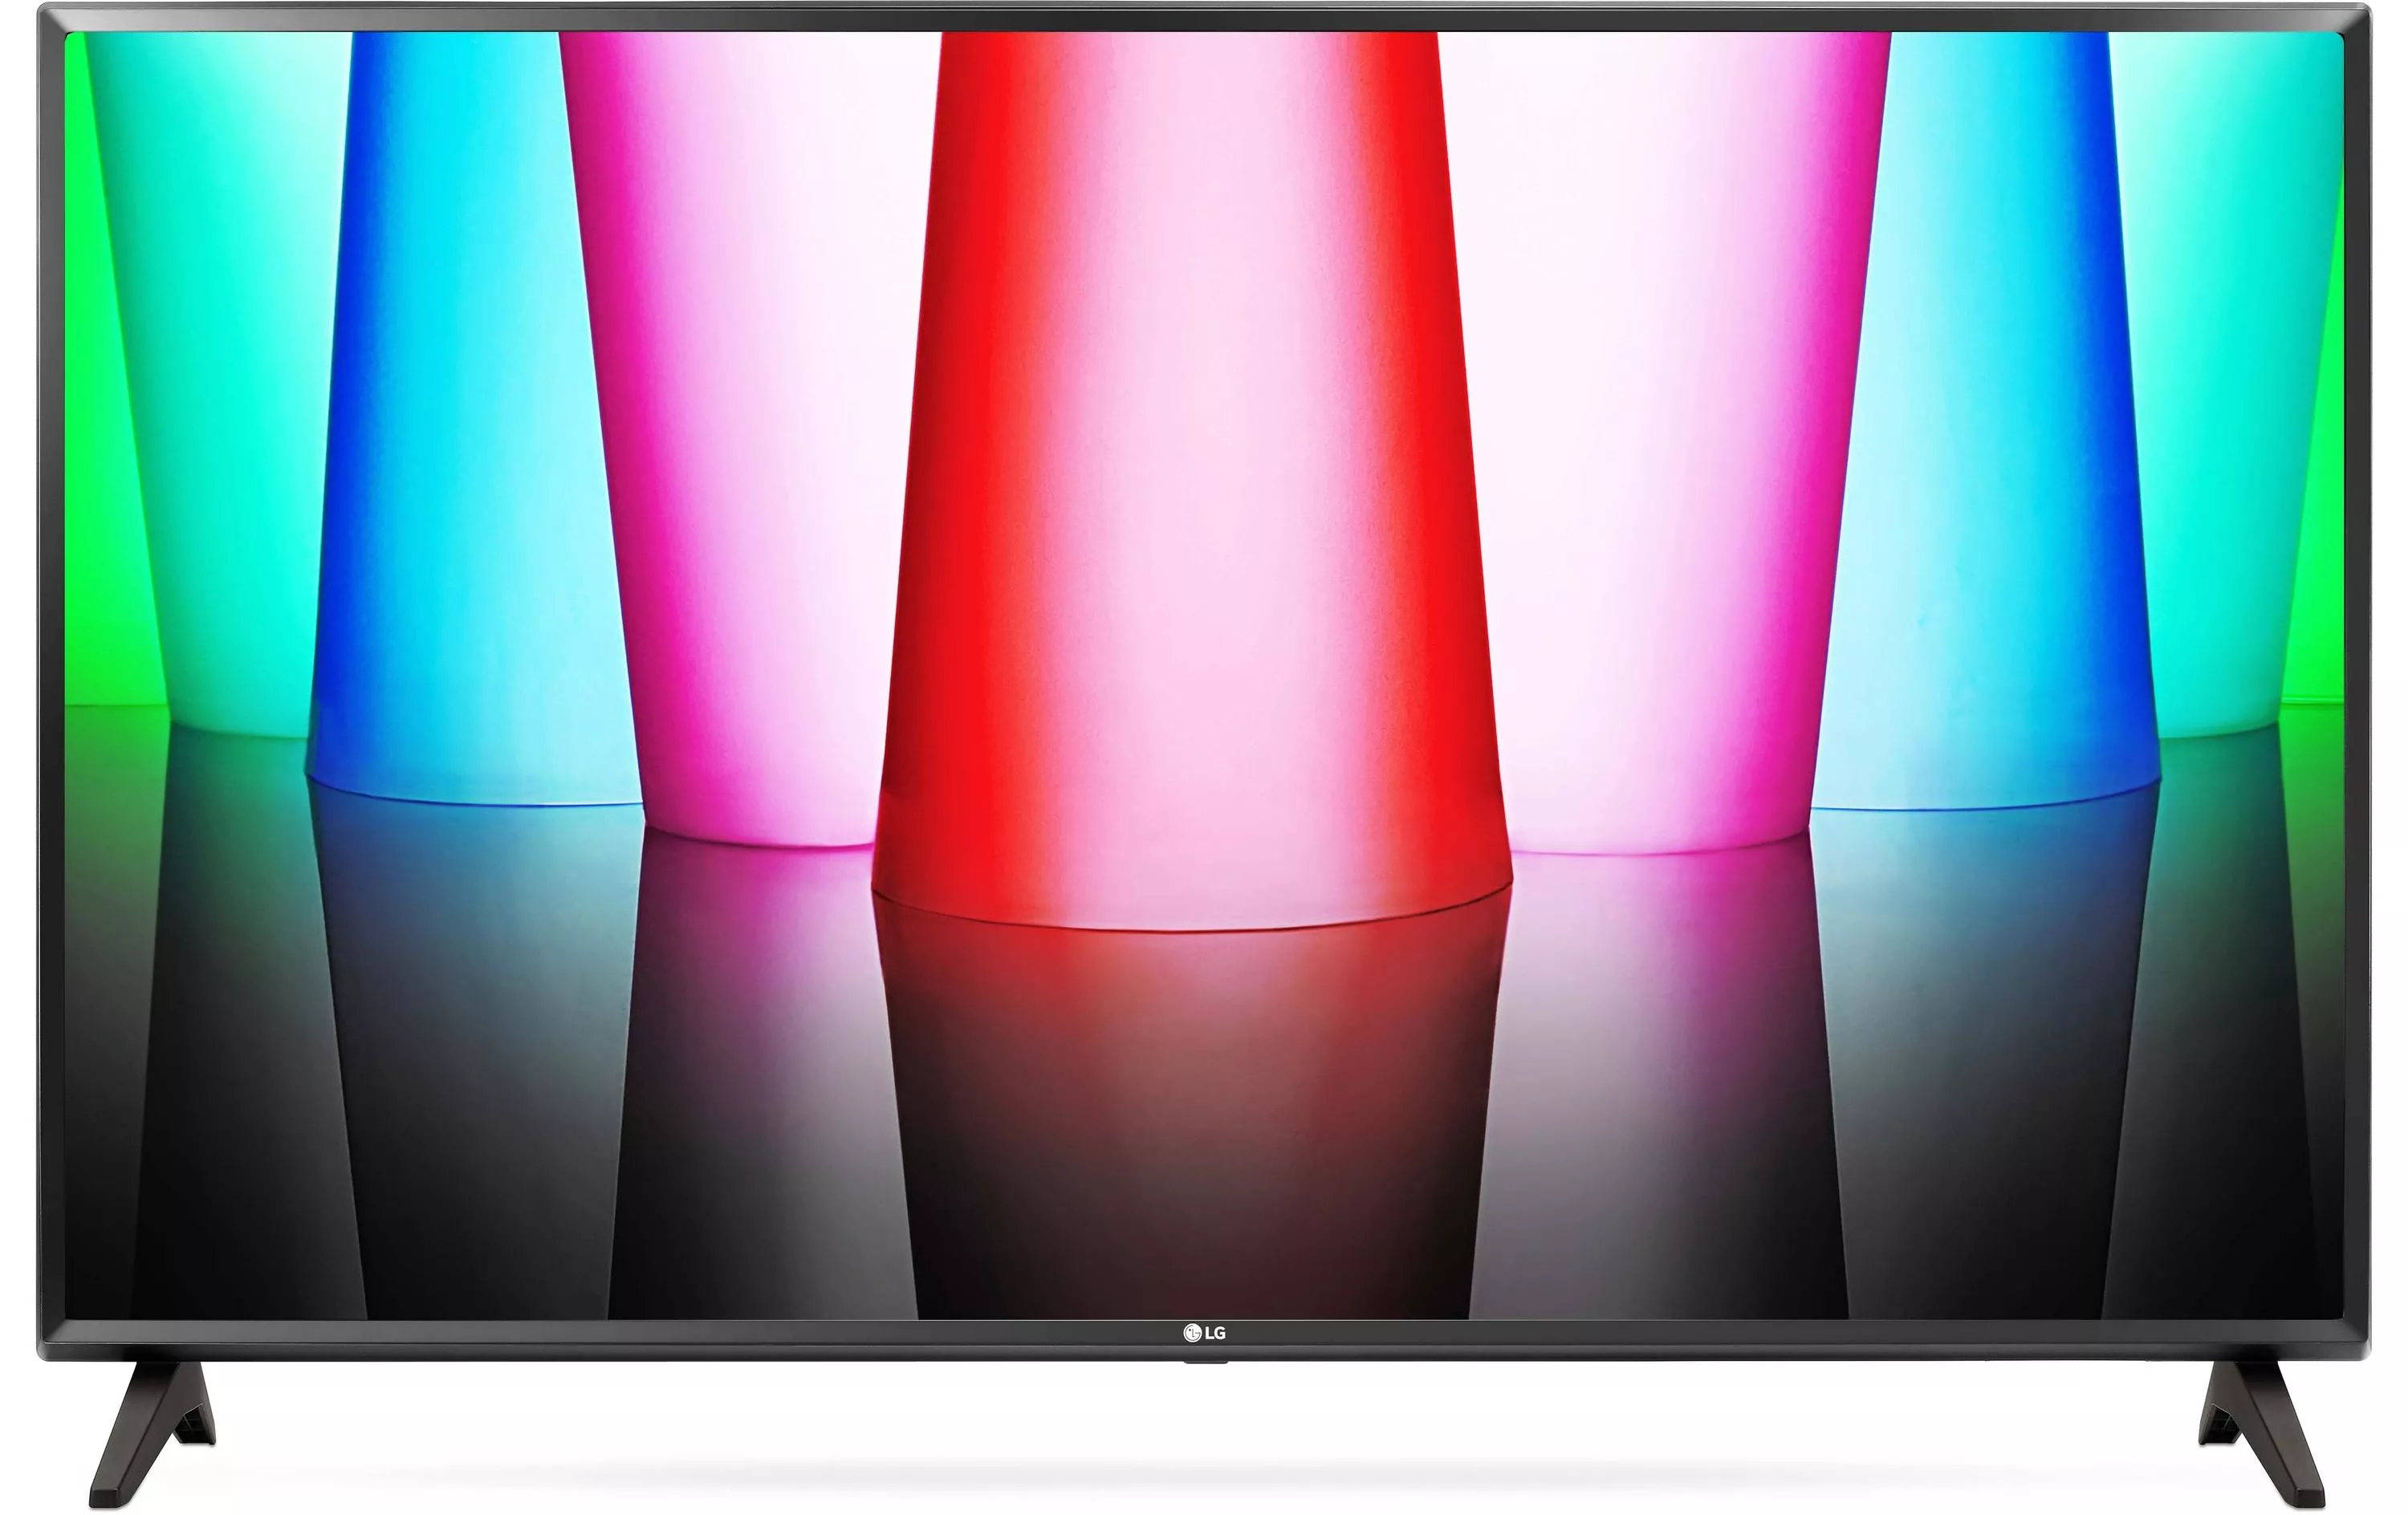 TV 32LQ570B6 32\", 1366 x 768 (WXGA), LED LCD